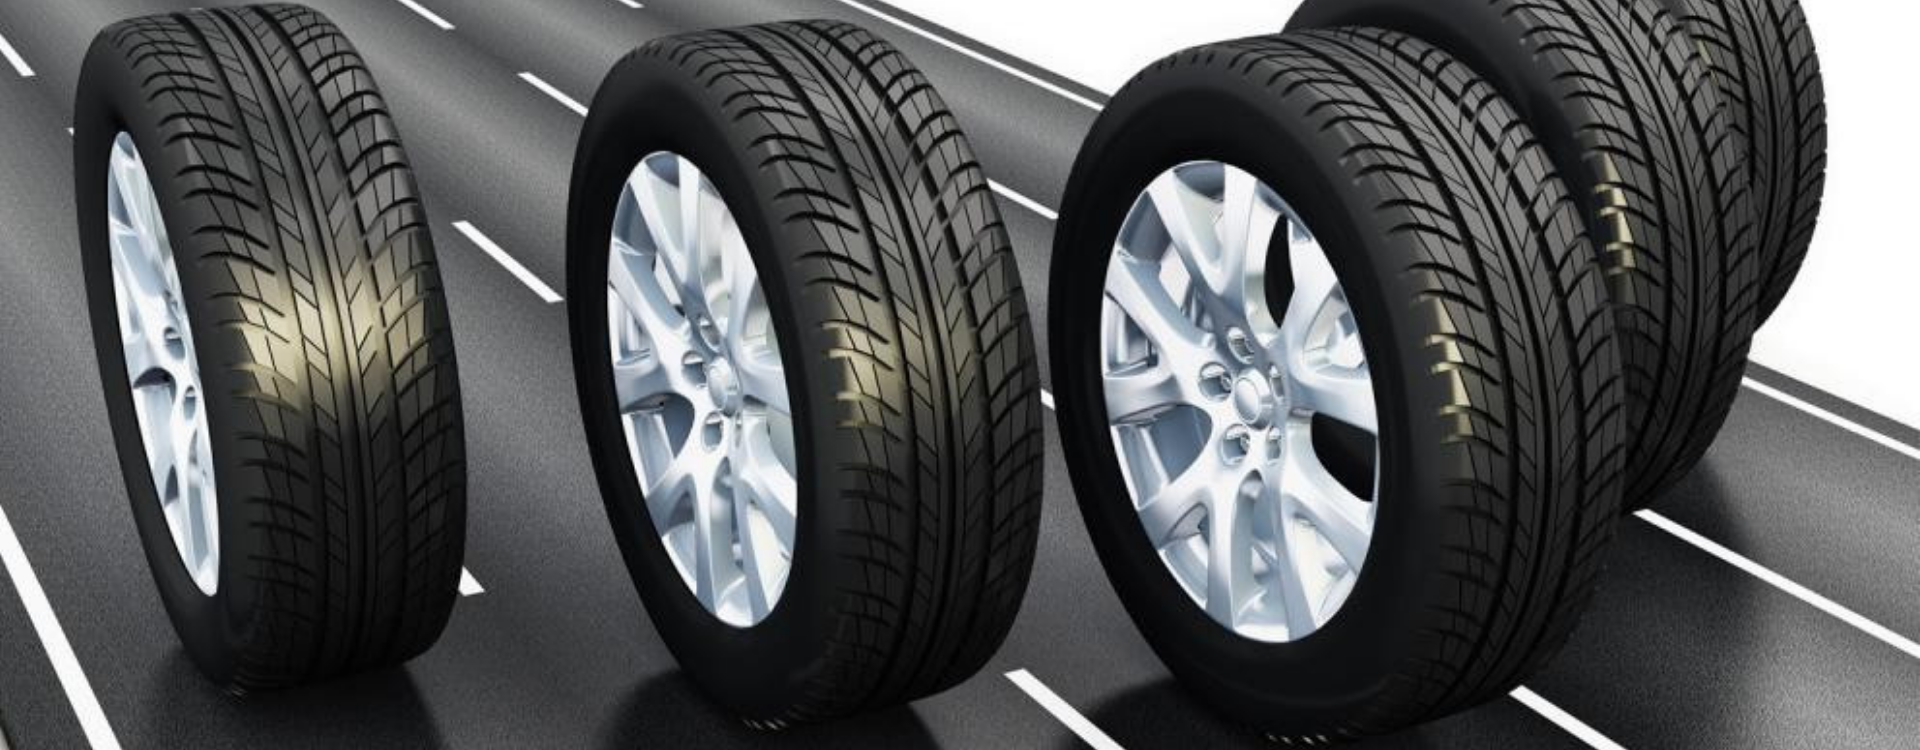 Puis je mettre des pneus de marques différentes à l'avant et à l'arrière ?